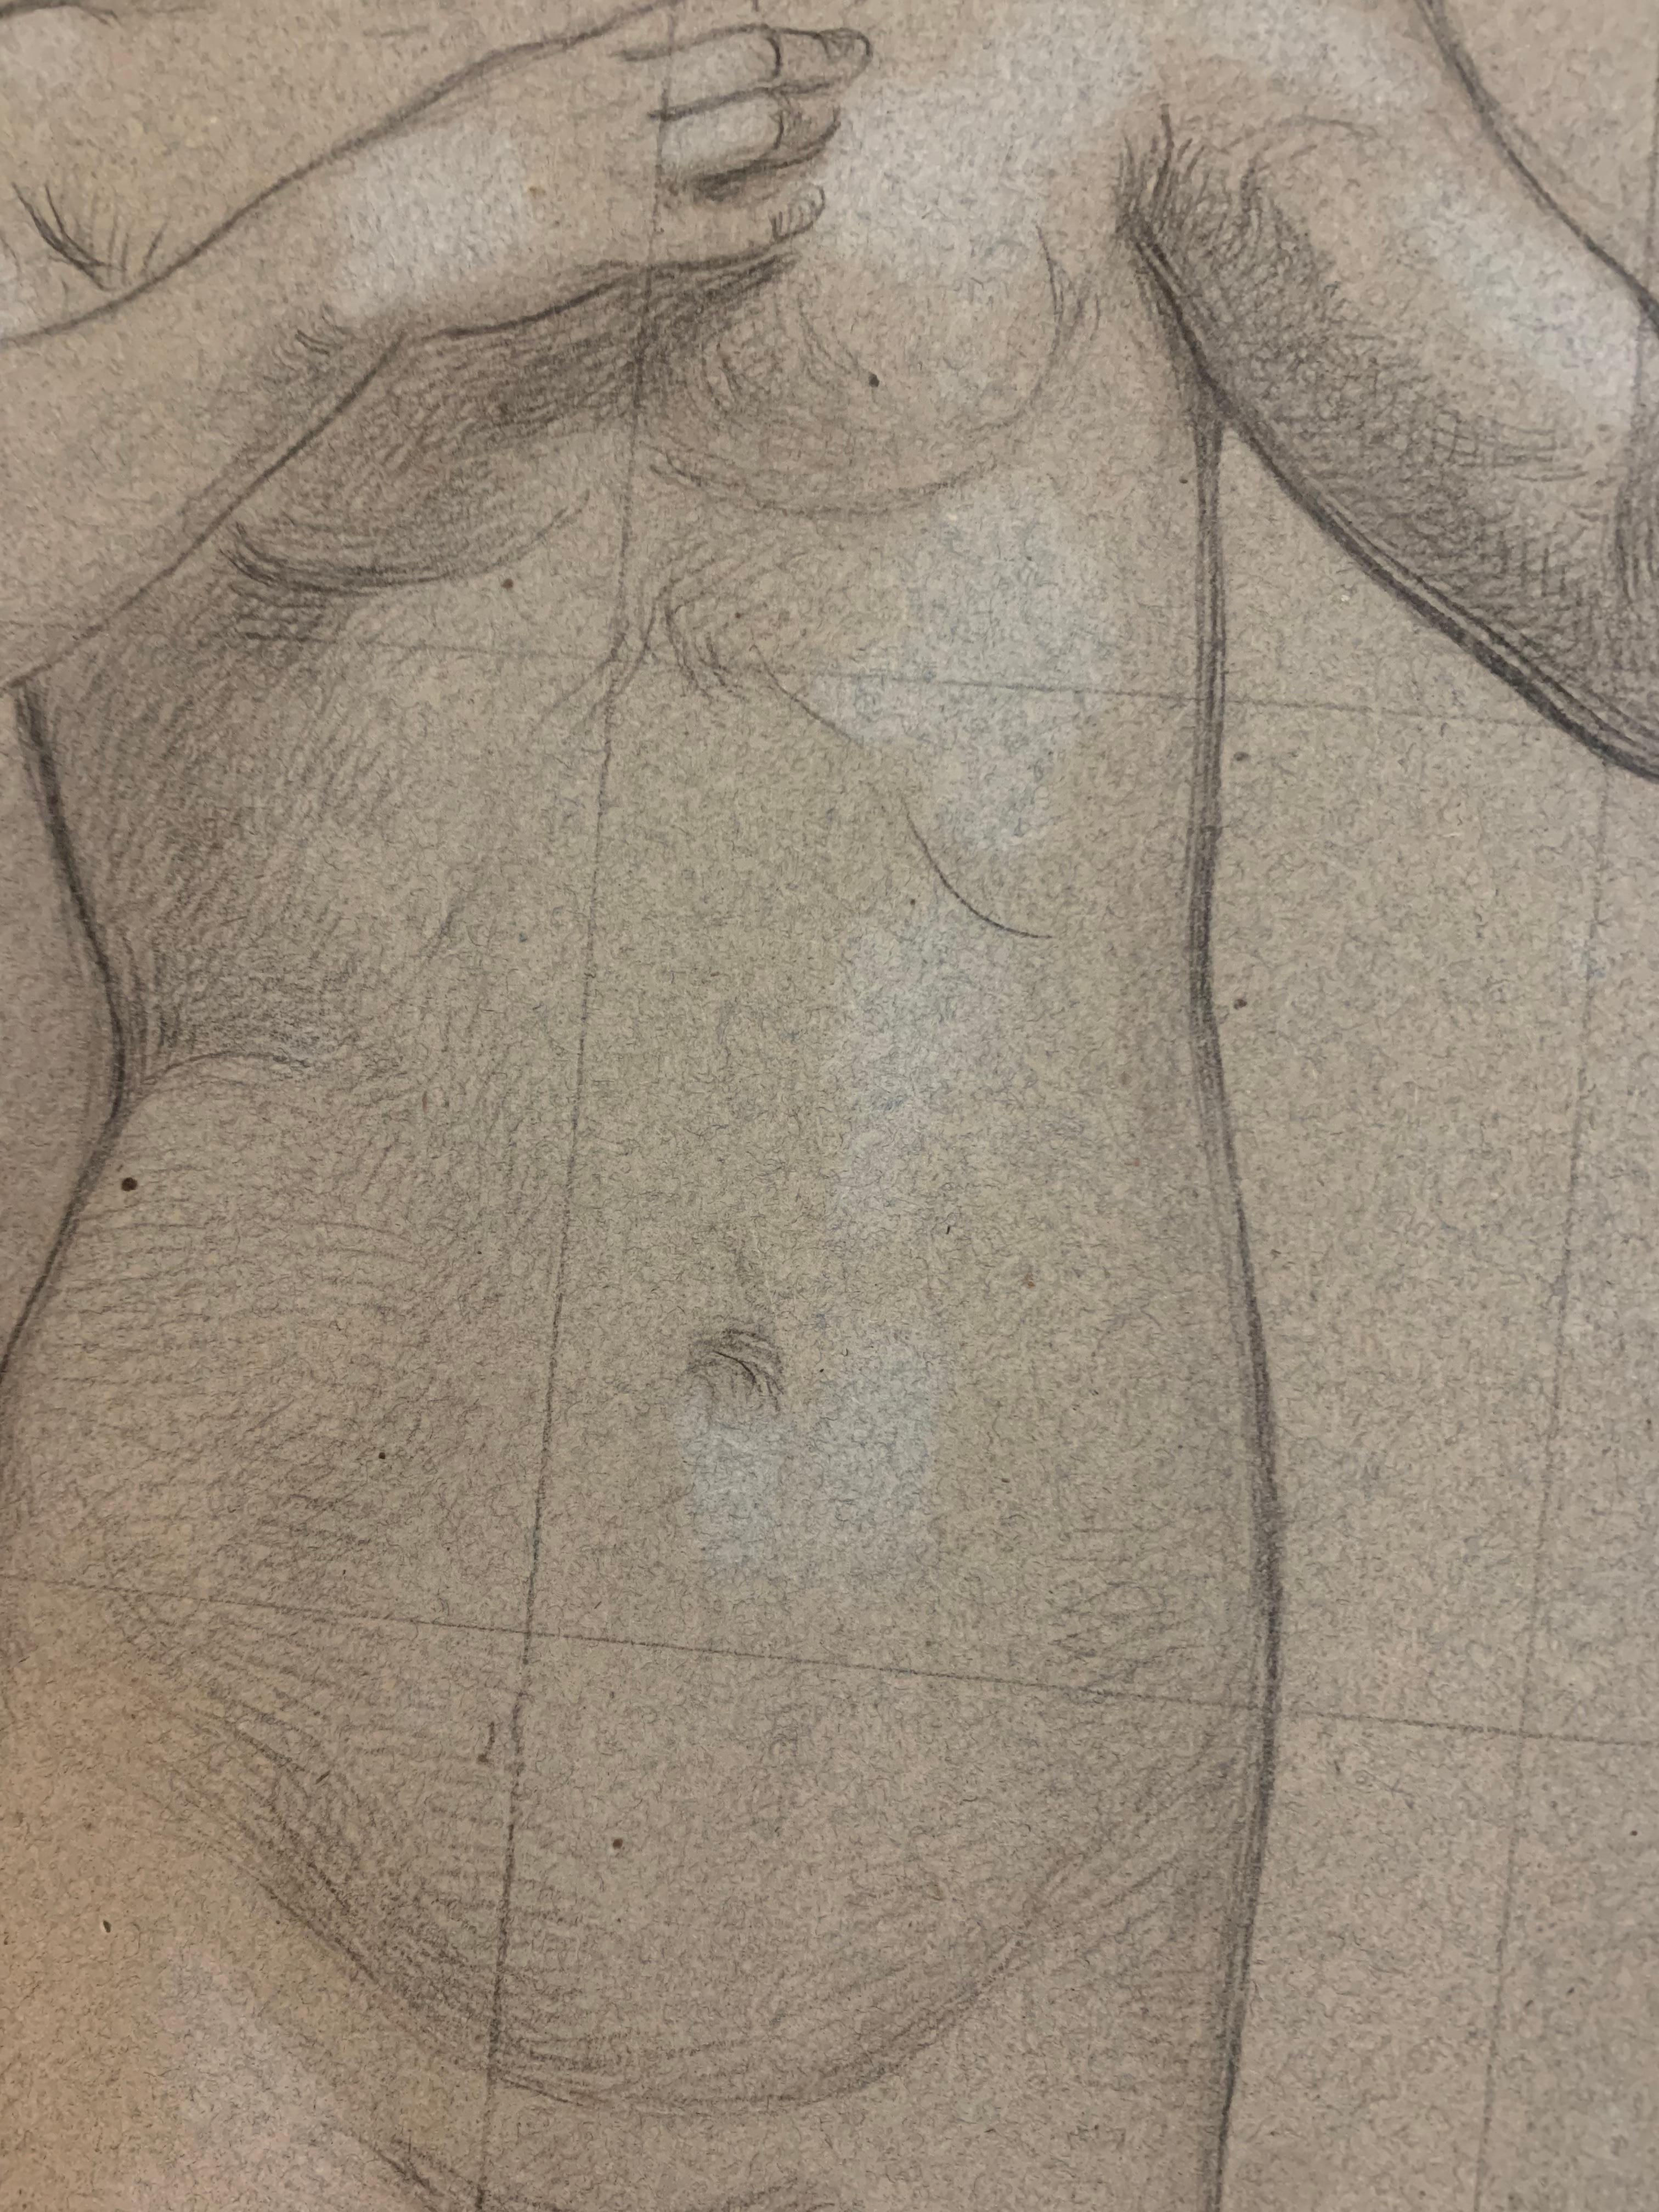 Eine große Skizzenstudie einer weiblichen Figur.
19. Jahrhundert.
Die junge Frau ist nackt abgebildet, ihre Hand scheint die Aufmerksamkeit auf sich zu ziehen.
Die Figur wird in eine Nische eingesetzt. Große Zeichnung auf leicht koloriertem Papier.